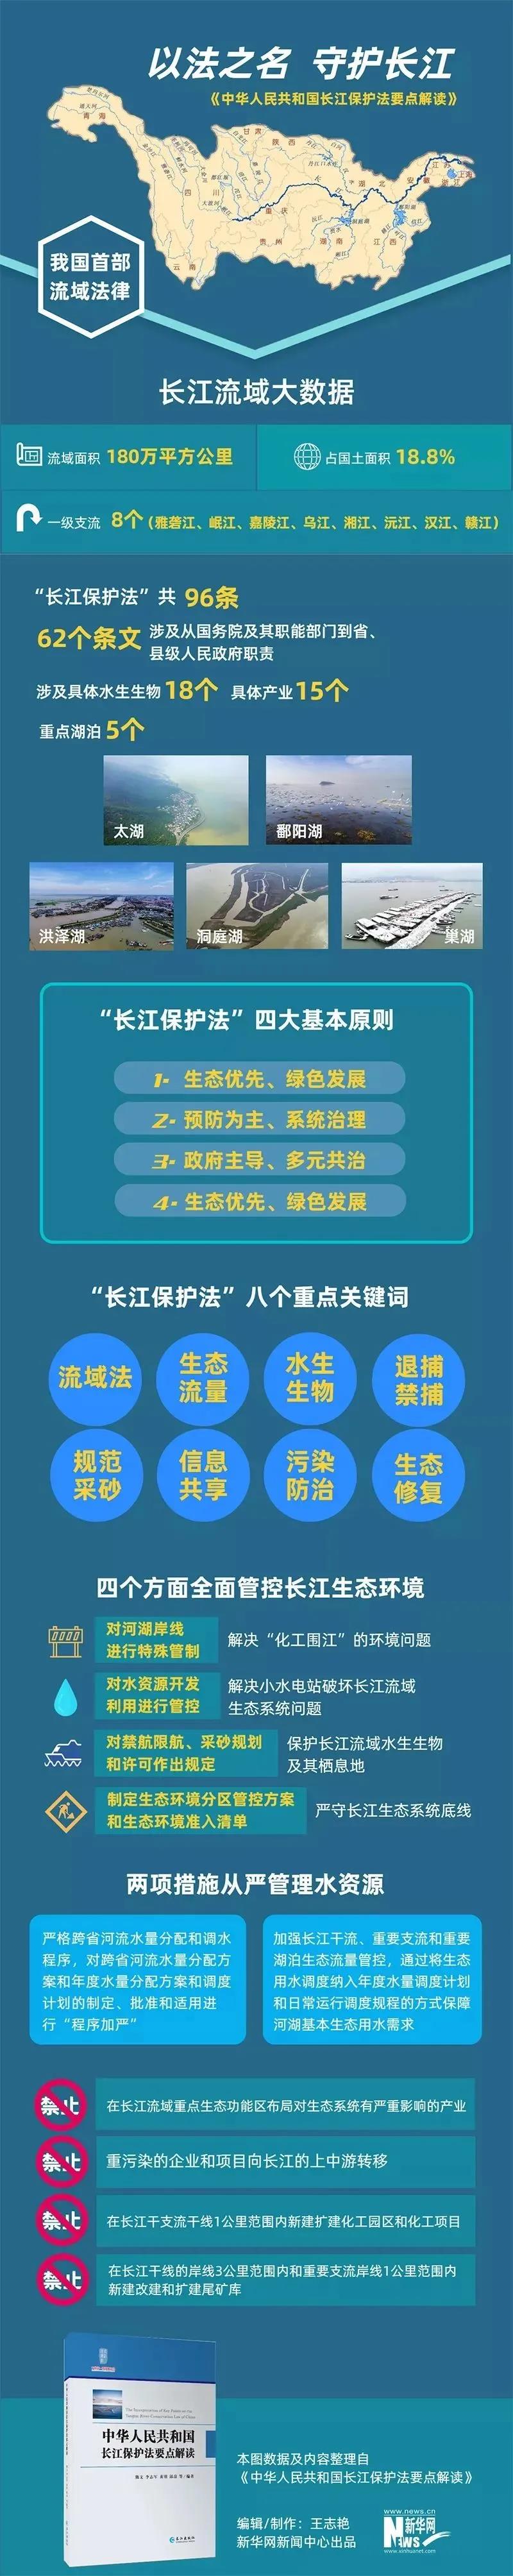 普法学习丨学习《长江保护法》